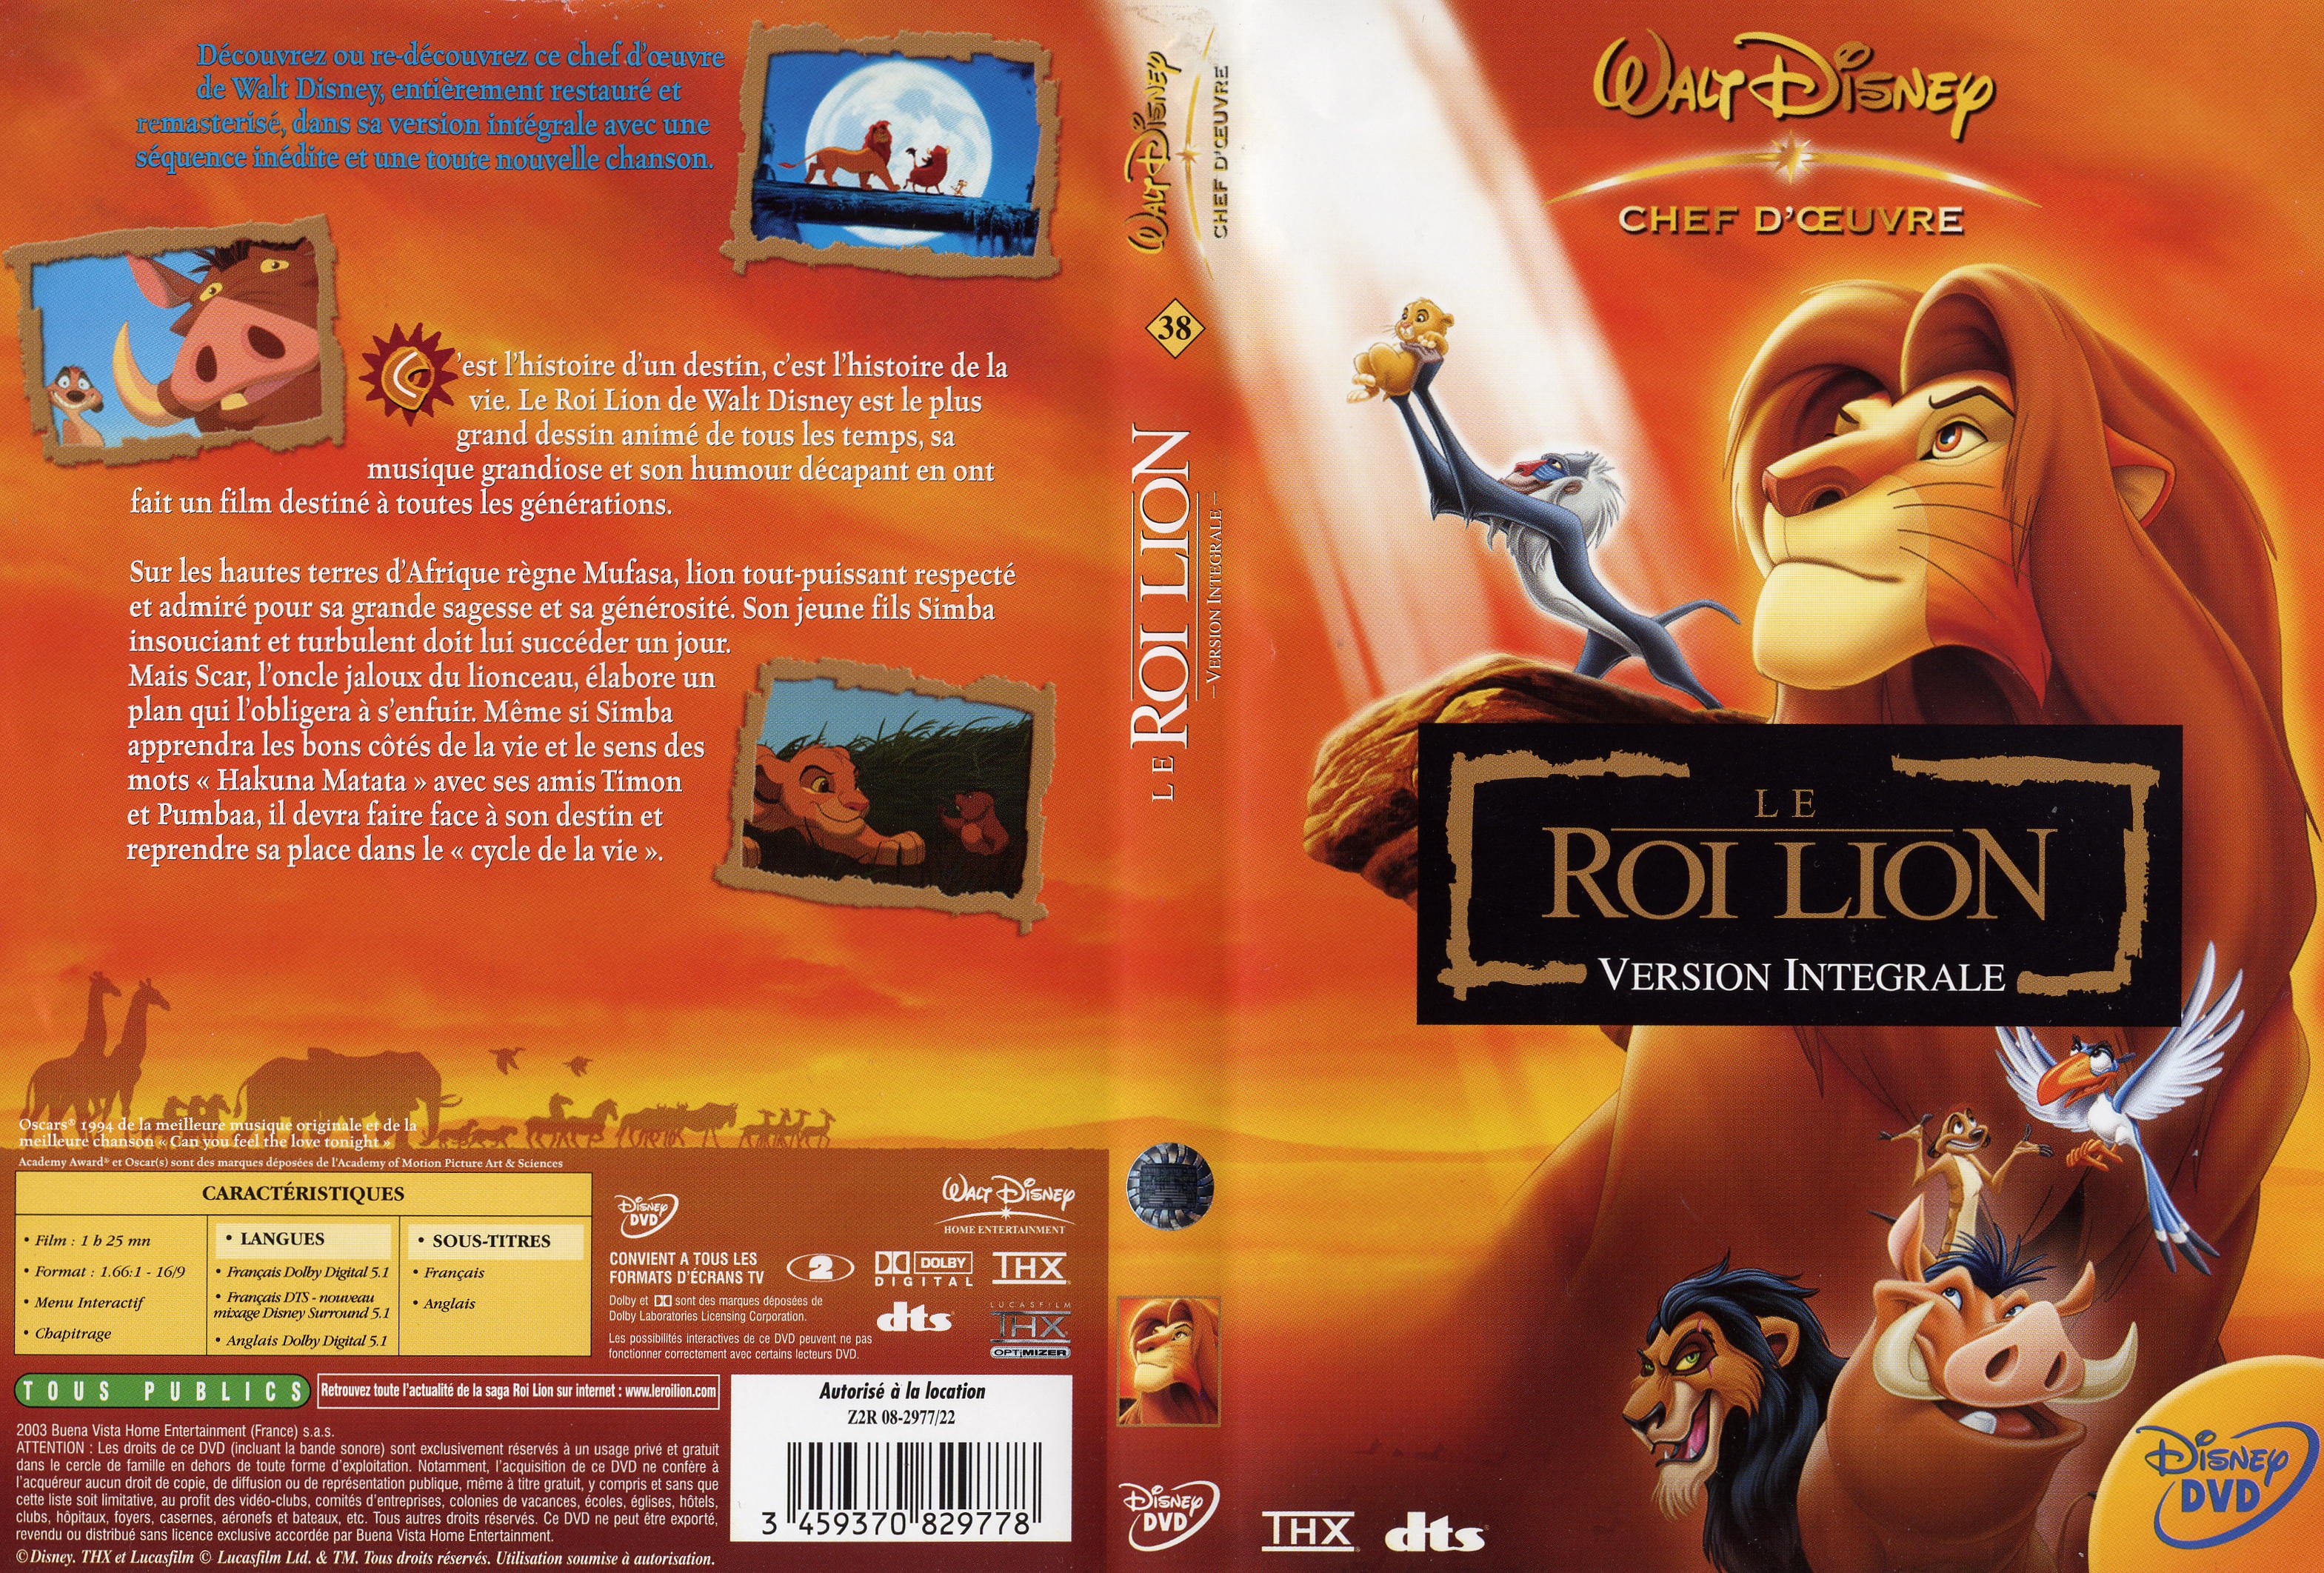 Jaquette DVD Le roi lion